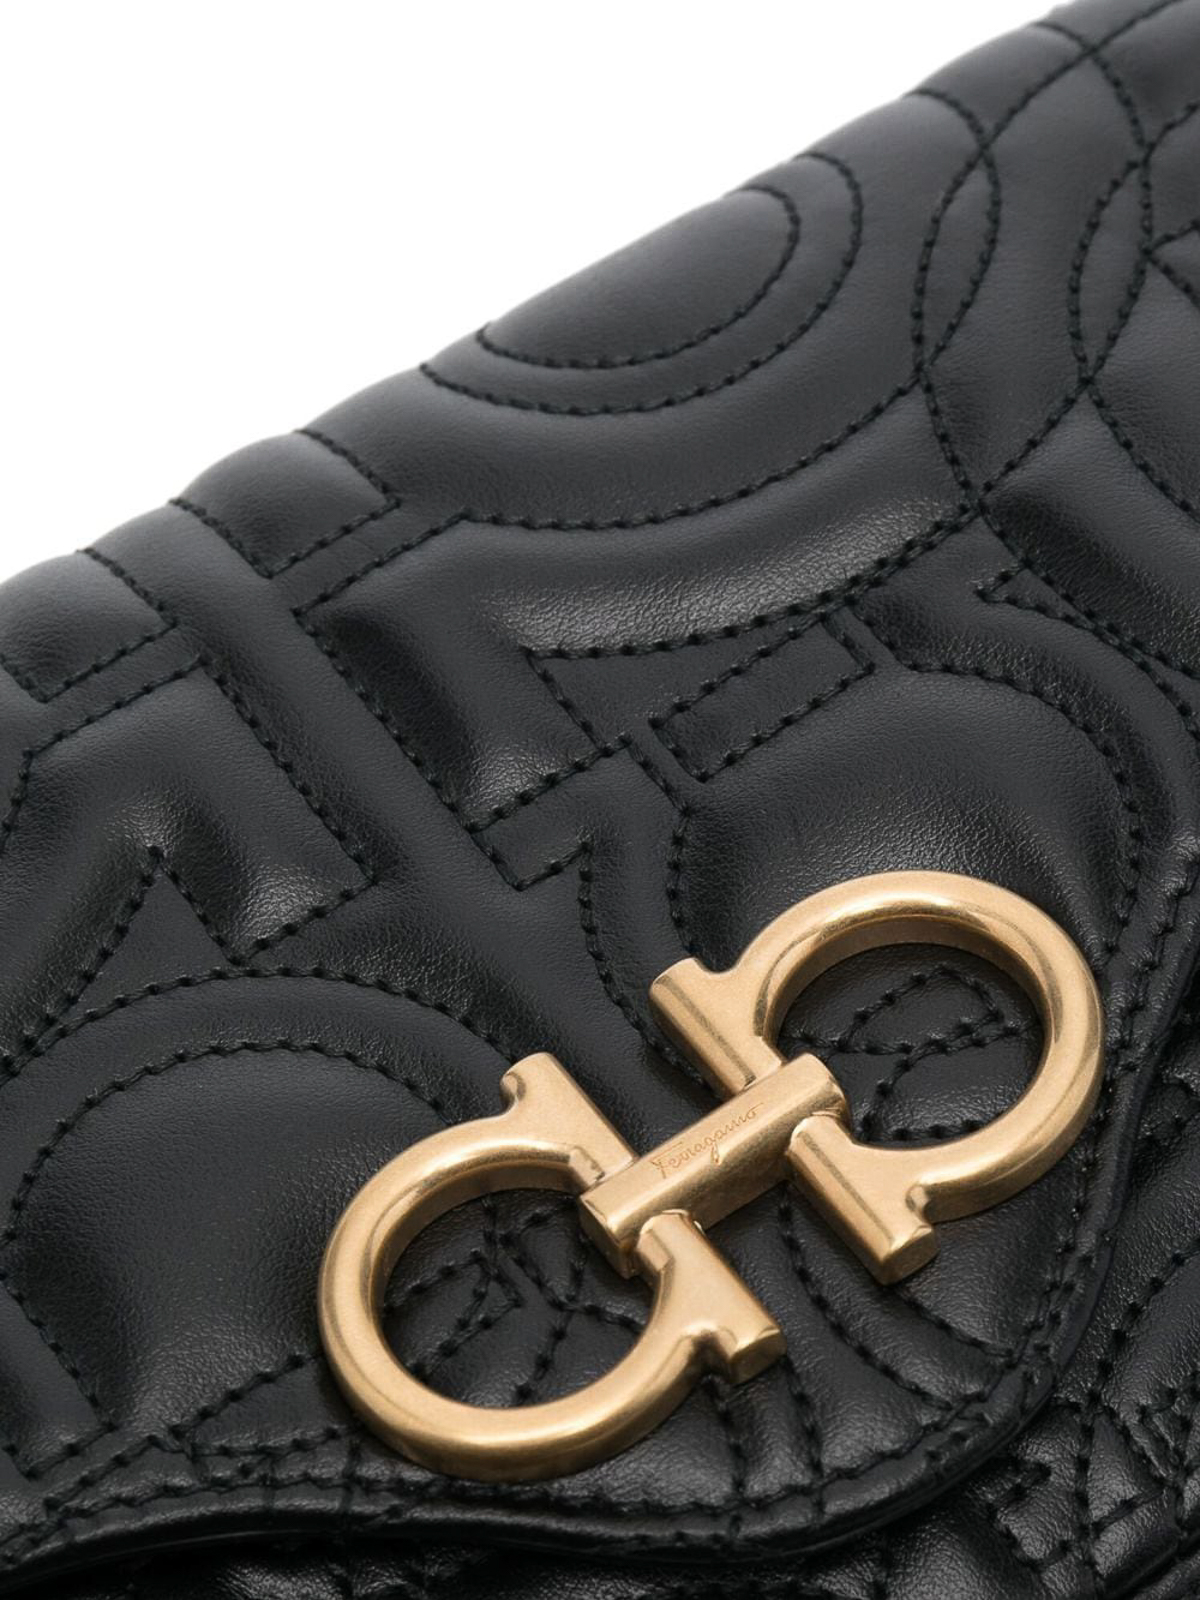 Ferragamo Leather Wallet w/ Chain